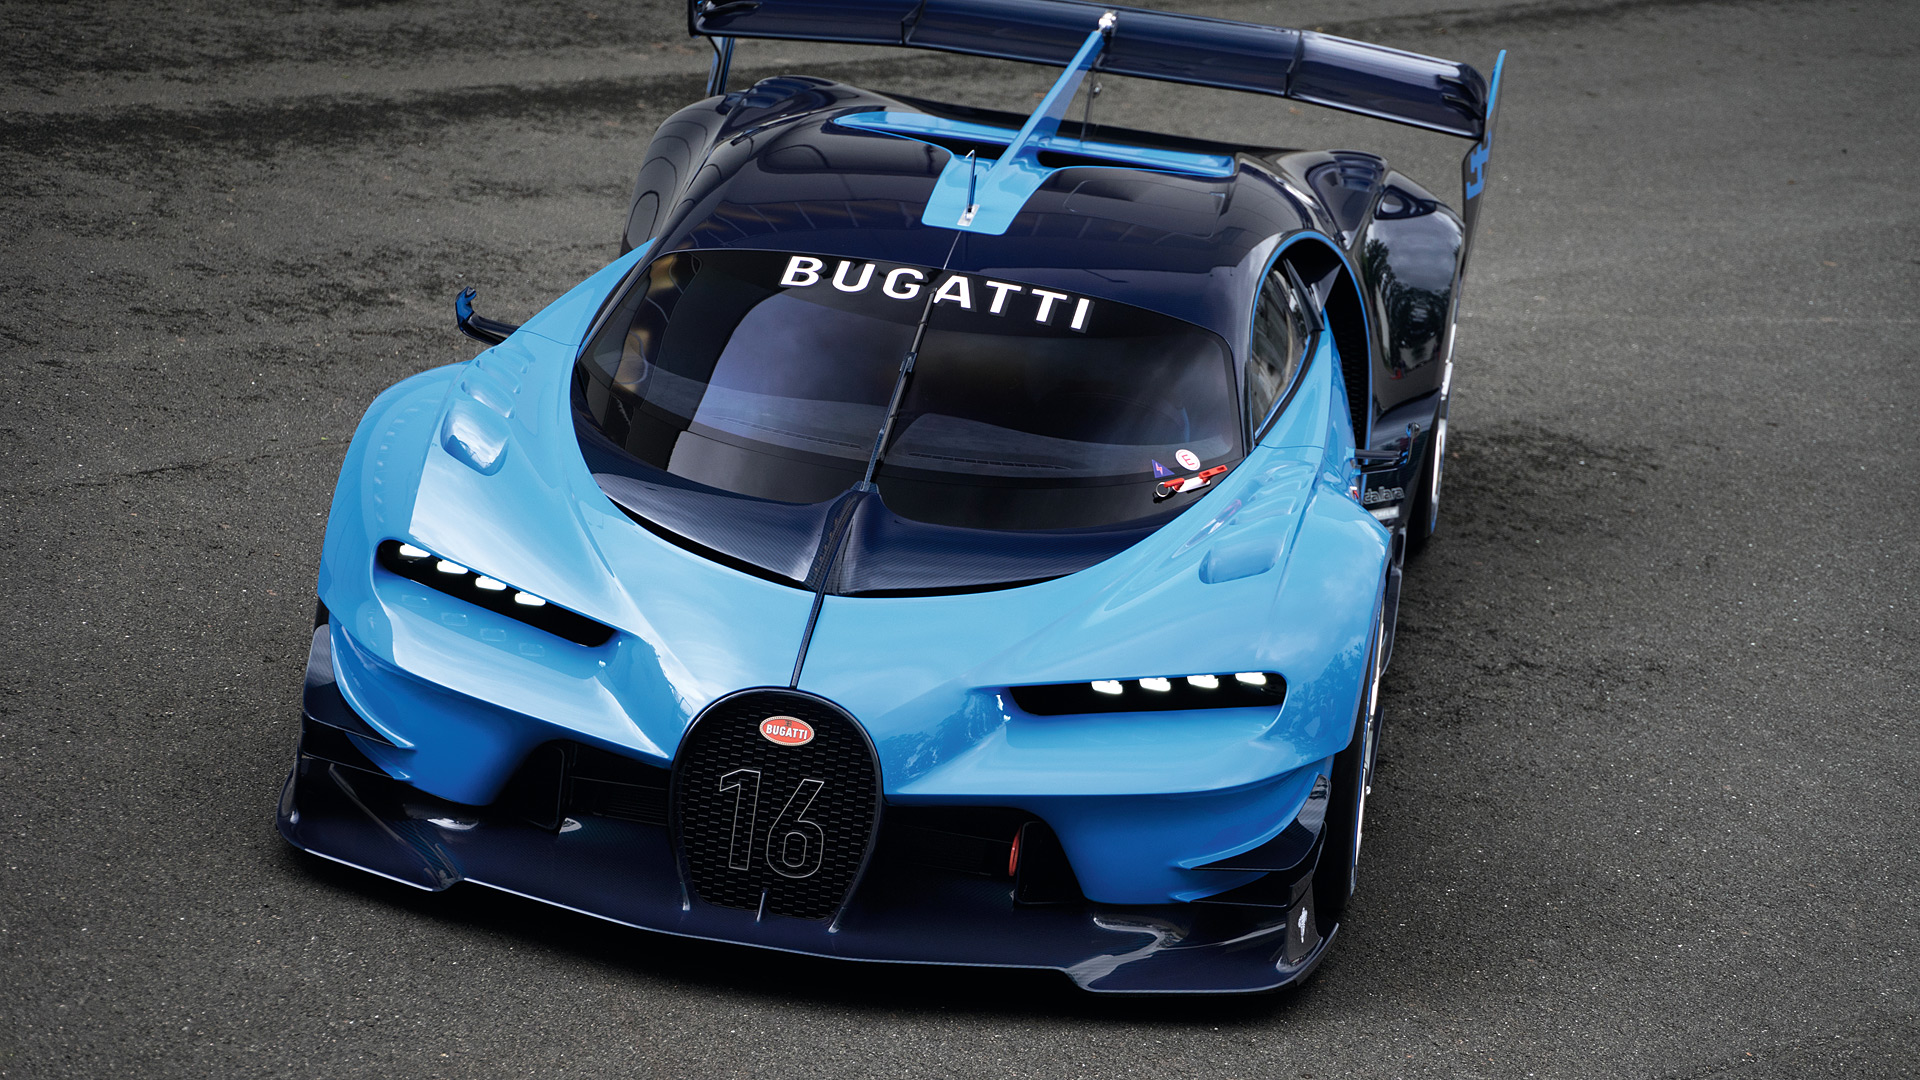  2015 Bugatti Vision Gran Turismo Concept Wallpaper.